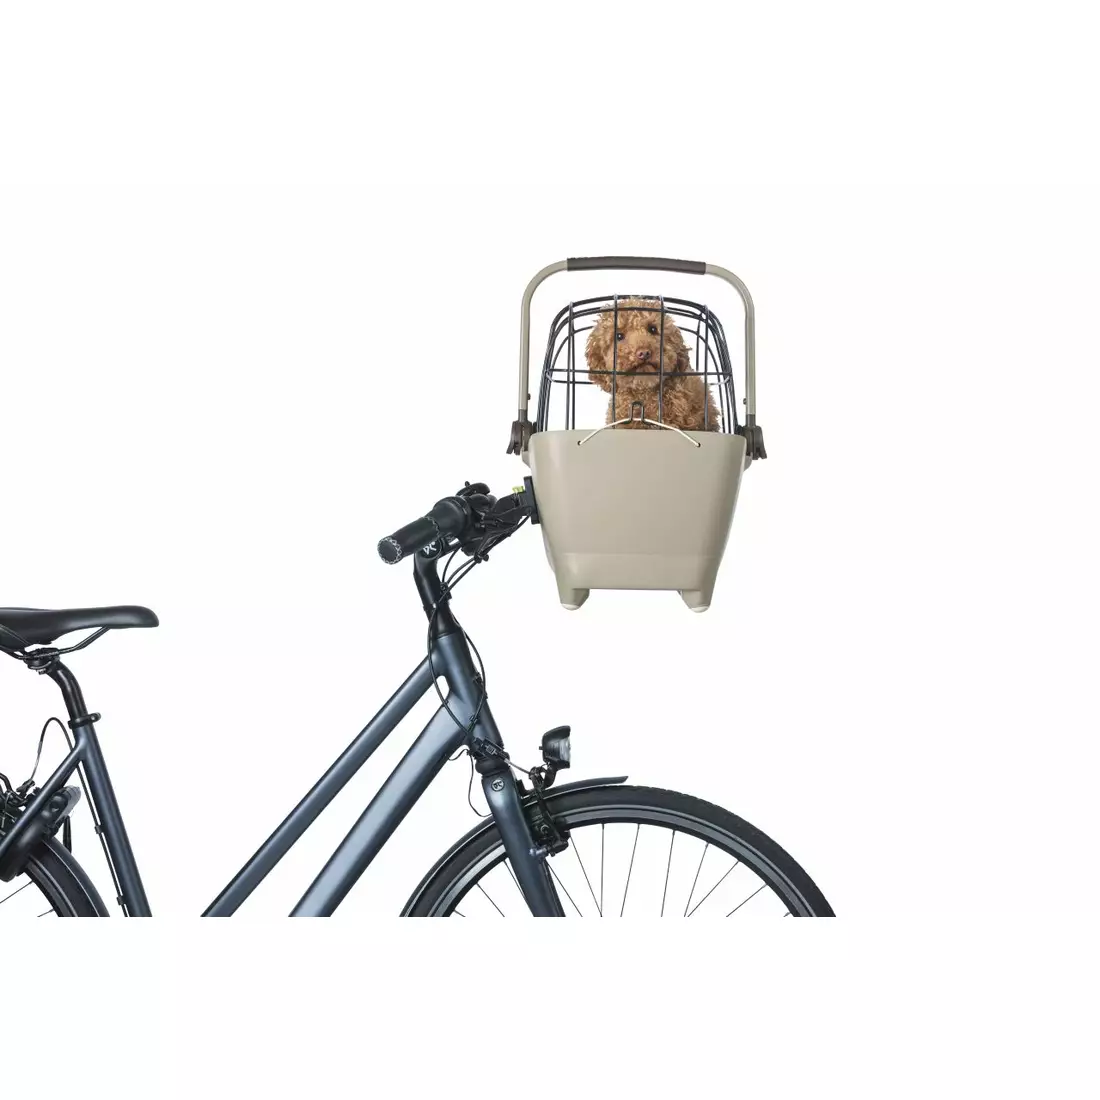 BASIL BUDDY KF přední košík na kolo pro psa s polštářkem, hnědá